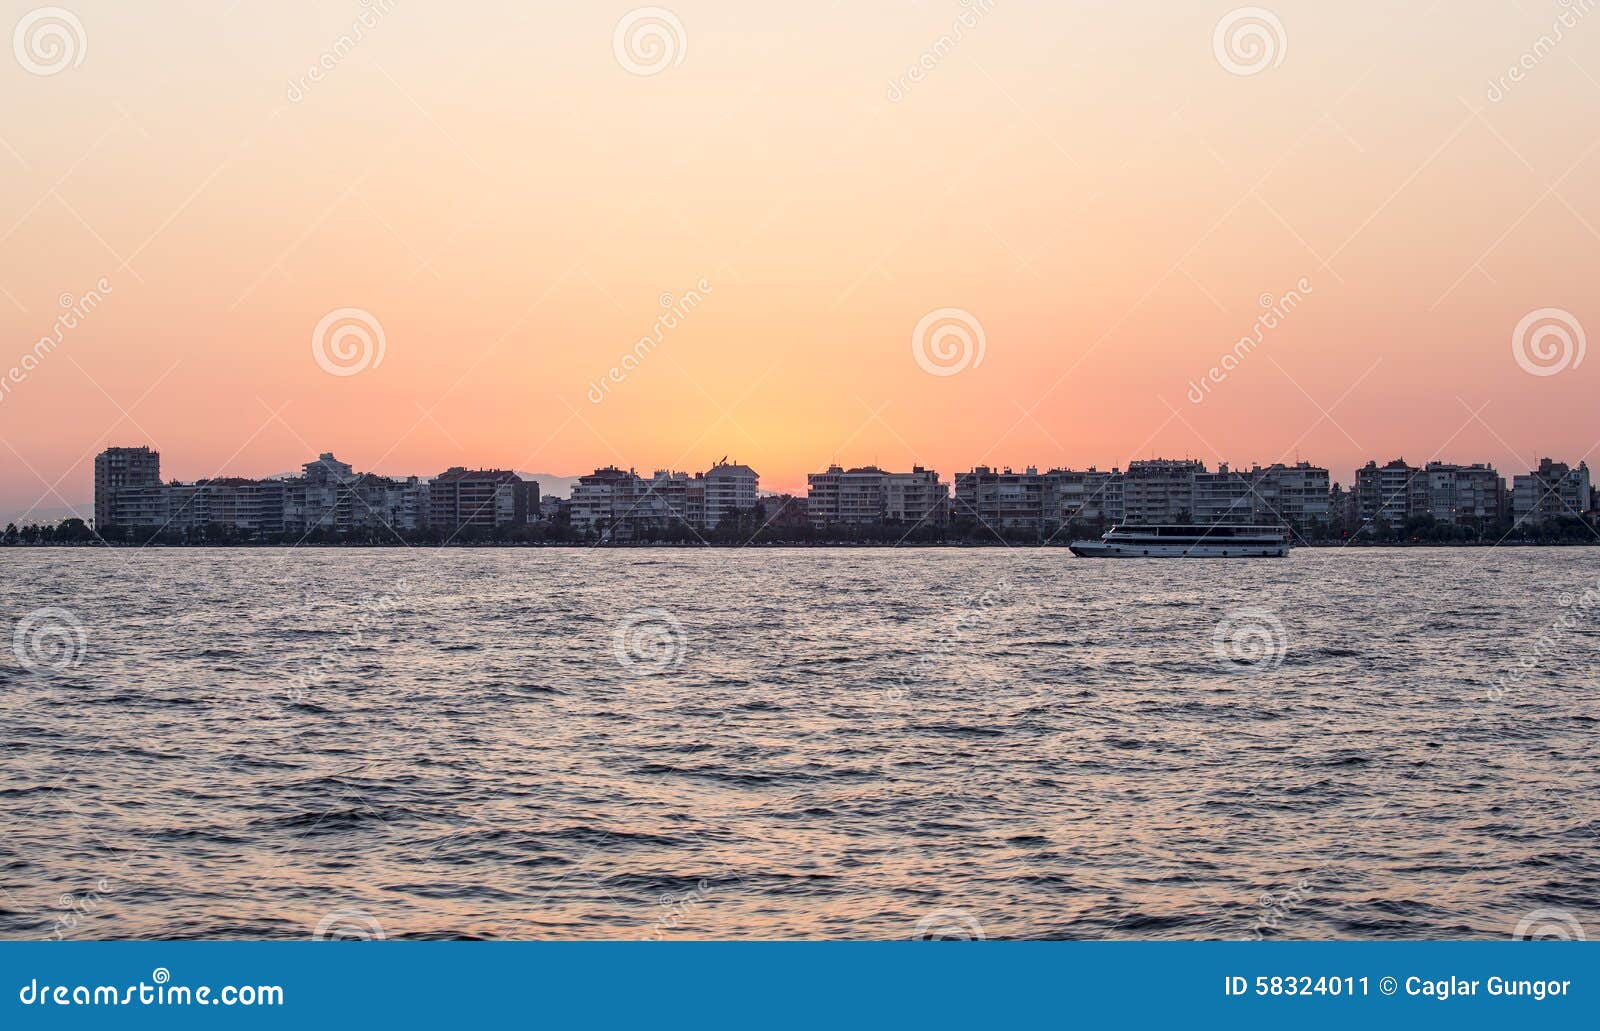 Karsiyaka - orizzonte di Smirne al tramonto. Orizzonte delle costruzioni e del mare nel distretto di Karsiyaka di Smirne, Turchia, al tramonto